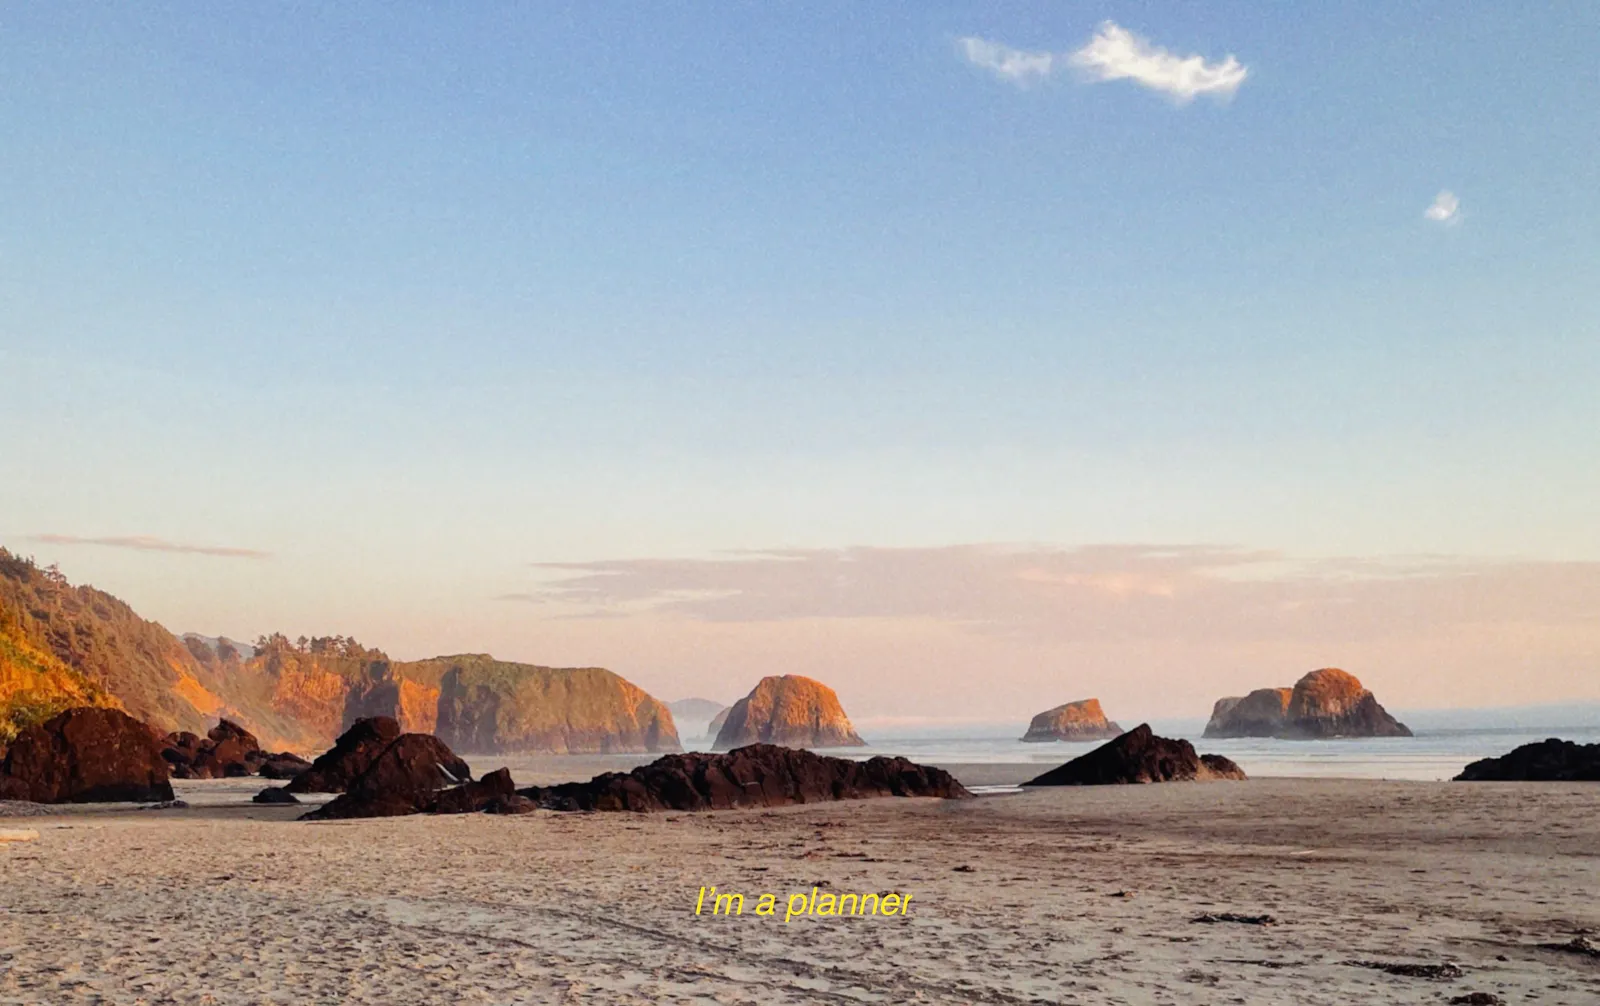 Ein Strand mit Felsen im Abendlicht, unten steht in gelber Schrift "I'm a planner"